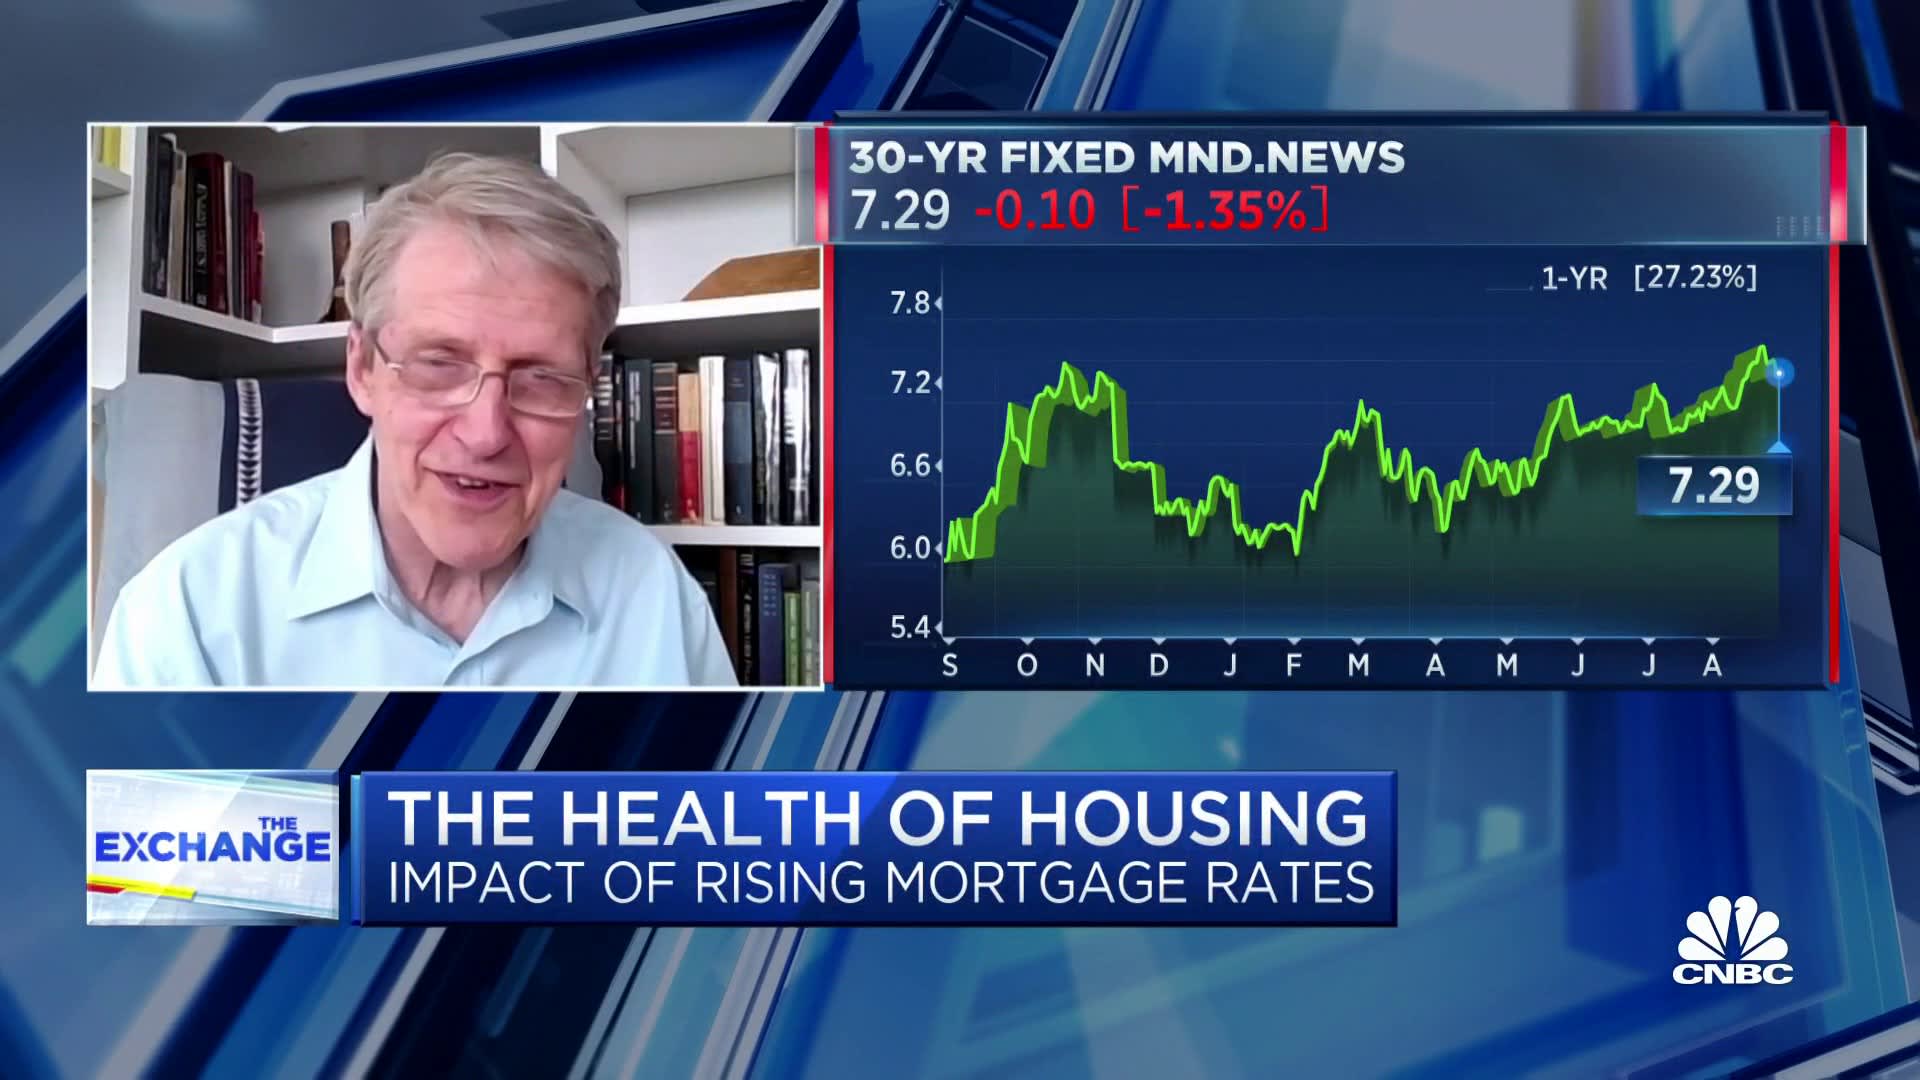 Laut Robert Shiller zeigt der Case-Shiller-Index trotz Zinserhöhungen eine jährliche Veränderung der Immobilienpreise von 0 %